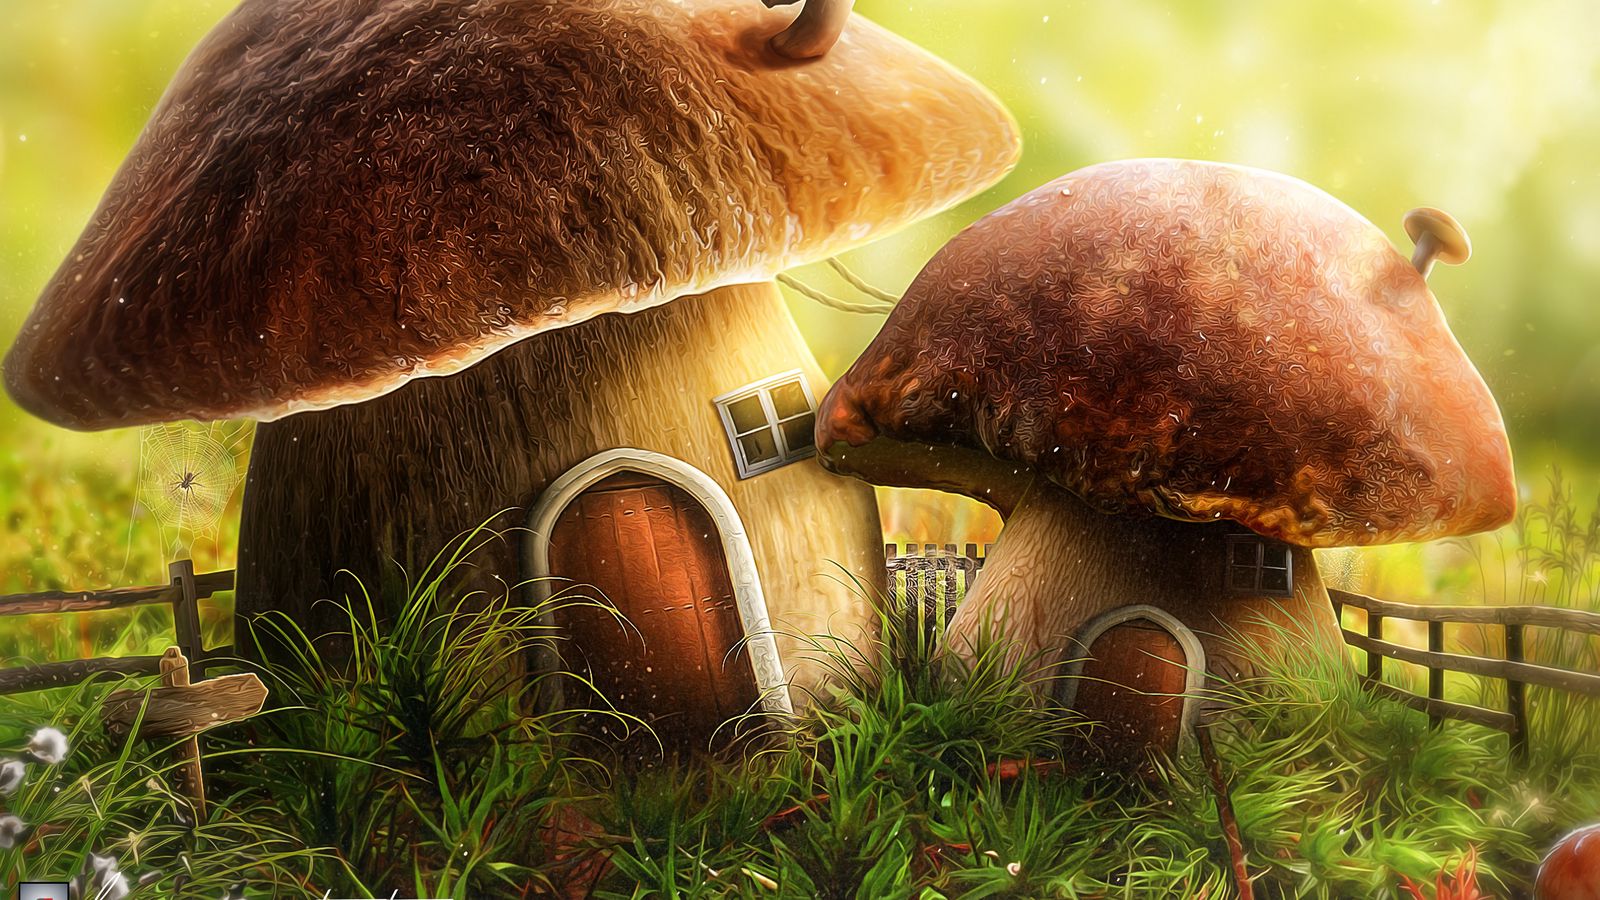 Download wallpaper 1600x900 mushroom, house, door, art widescreen 16:9 HD background